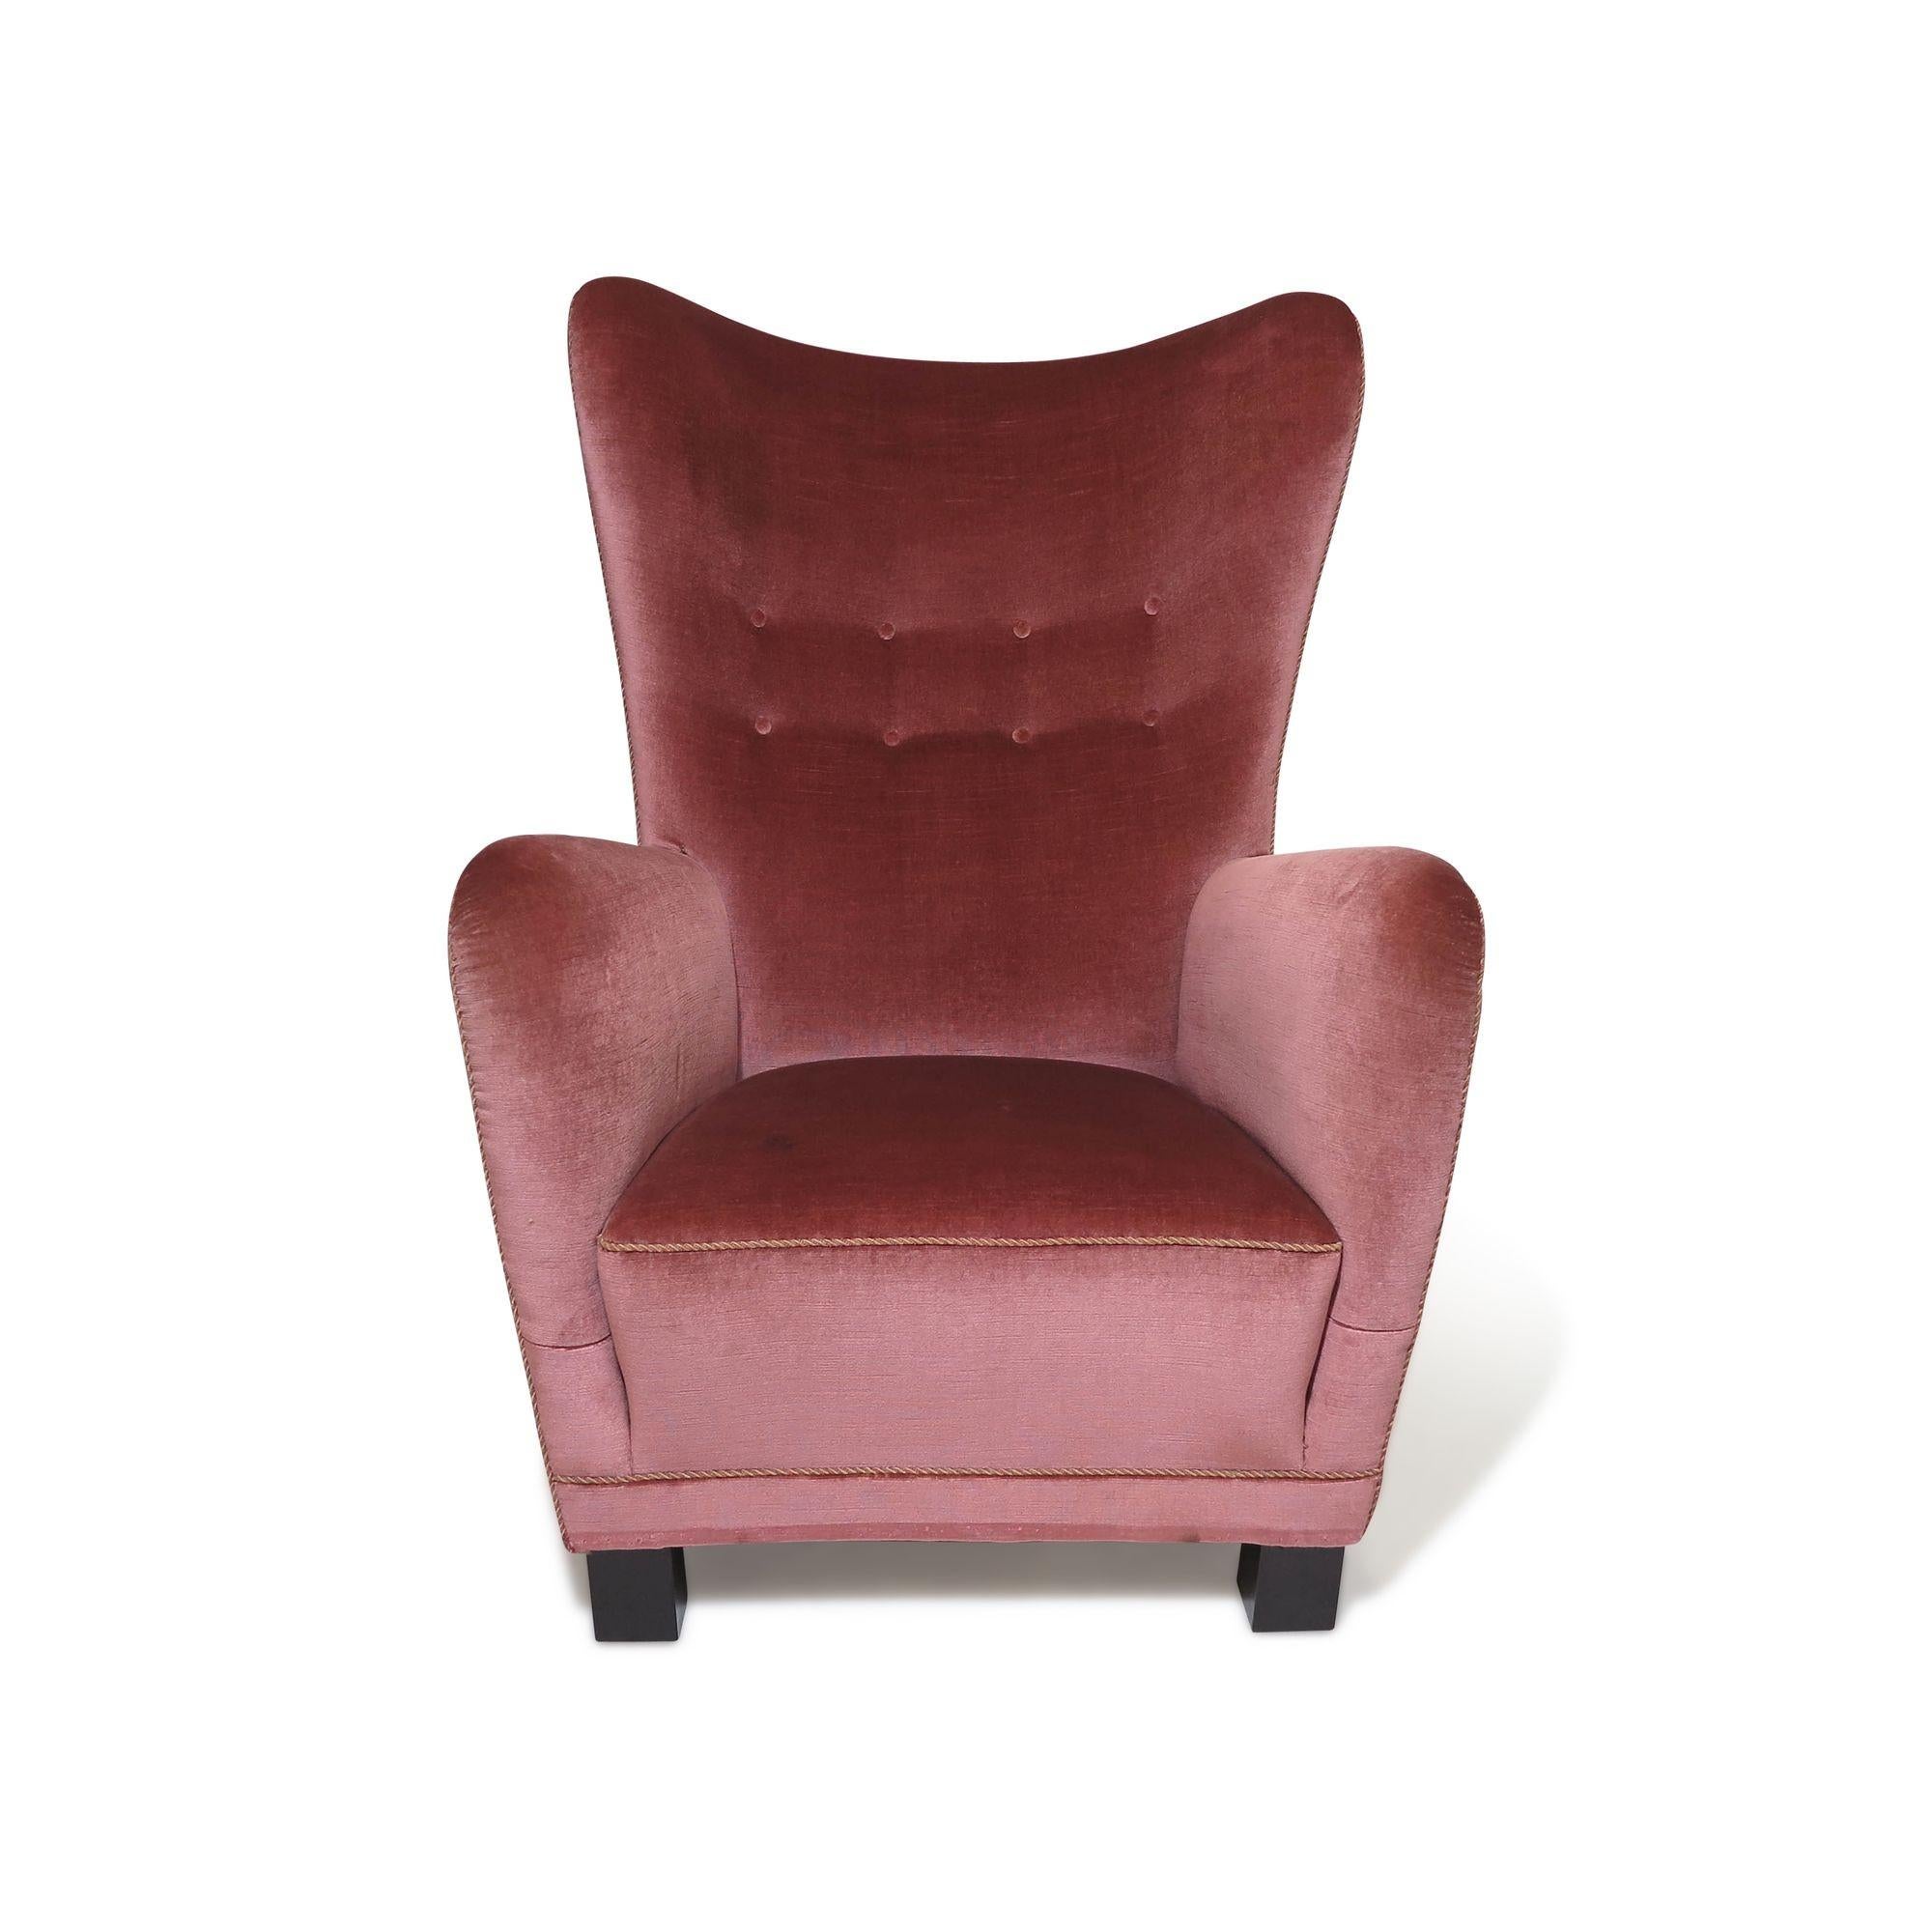 Scandinavian Modern 1942 Fritz Hansen High-back Lounge Chair #1672 in Original Mohair For Sale